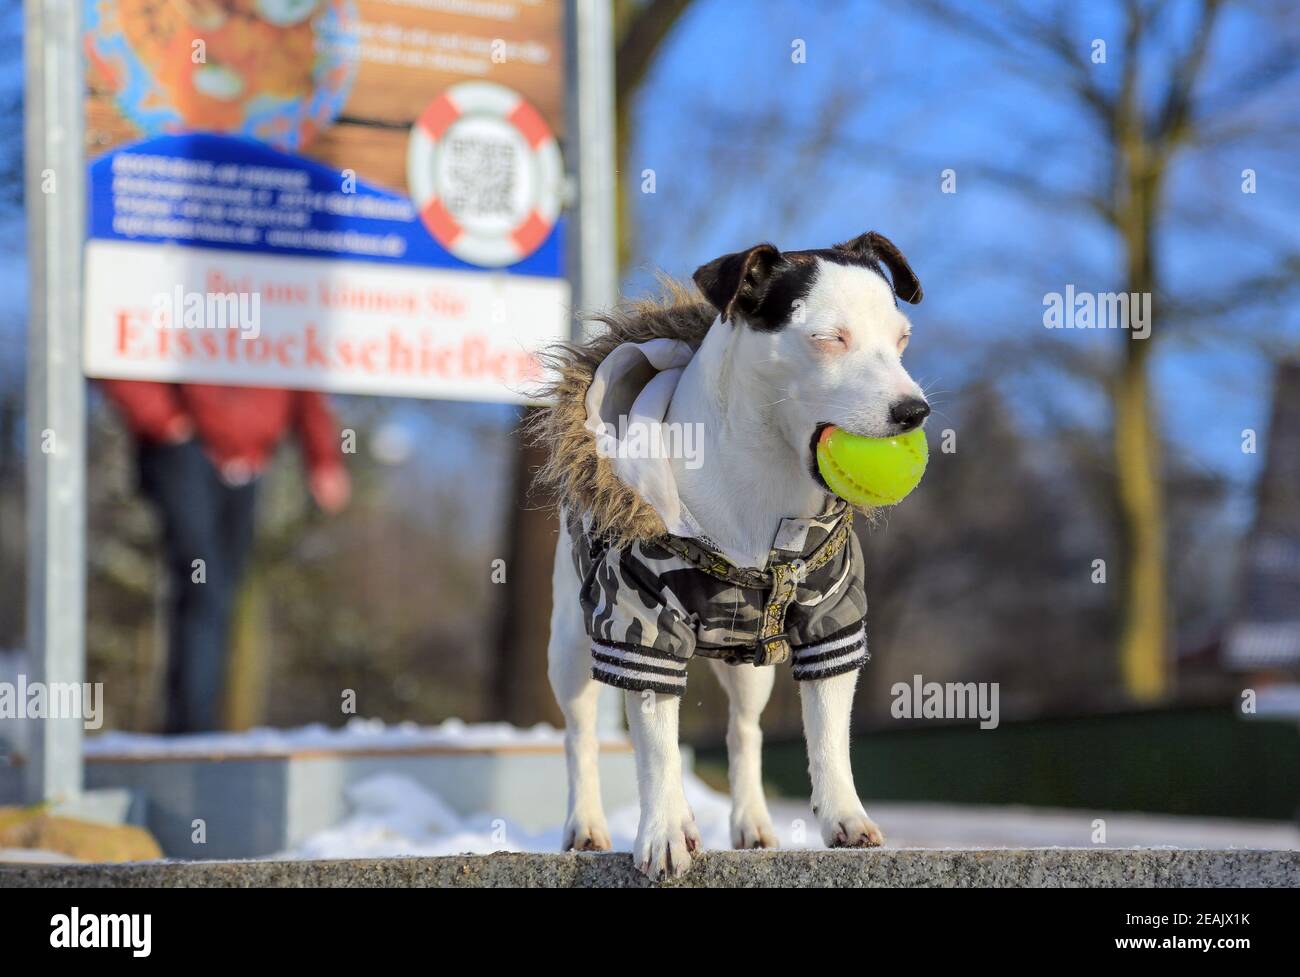 Ein Bullterrier mit einem Ball im Mund. Der Hund trägt eine Pelzjacke. Der entsprechend geschulte Hund trotzte jeglichen Vorurteilen gegen Kampfhunde. Stockfoto